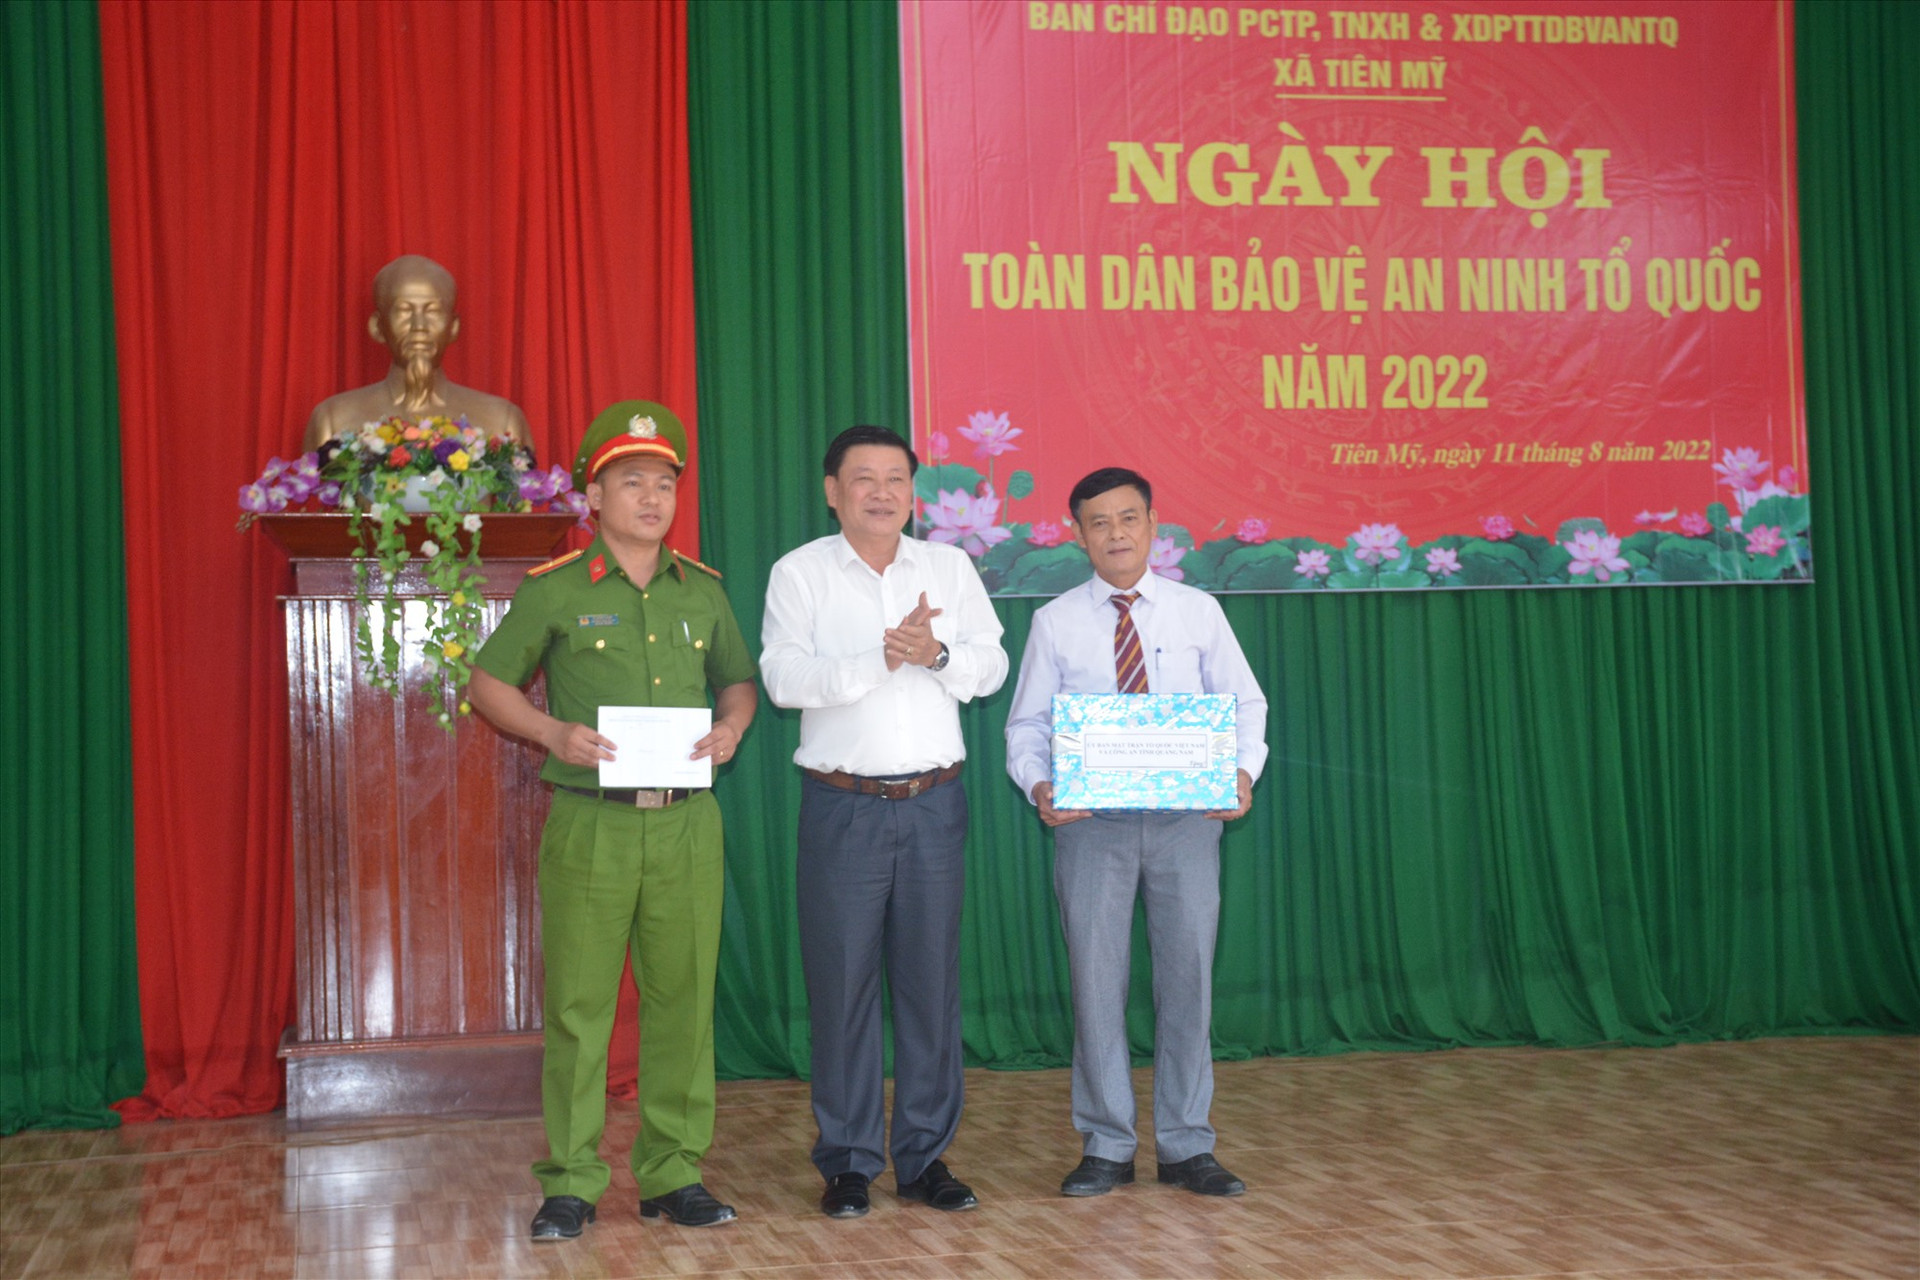 Đồng chí Lê Thái Bình, Phó Chủ tịch Ủy ban MTTQ Việt Nam tỉnh tặng quà chúc mừng ngày hội